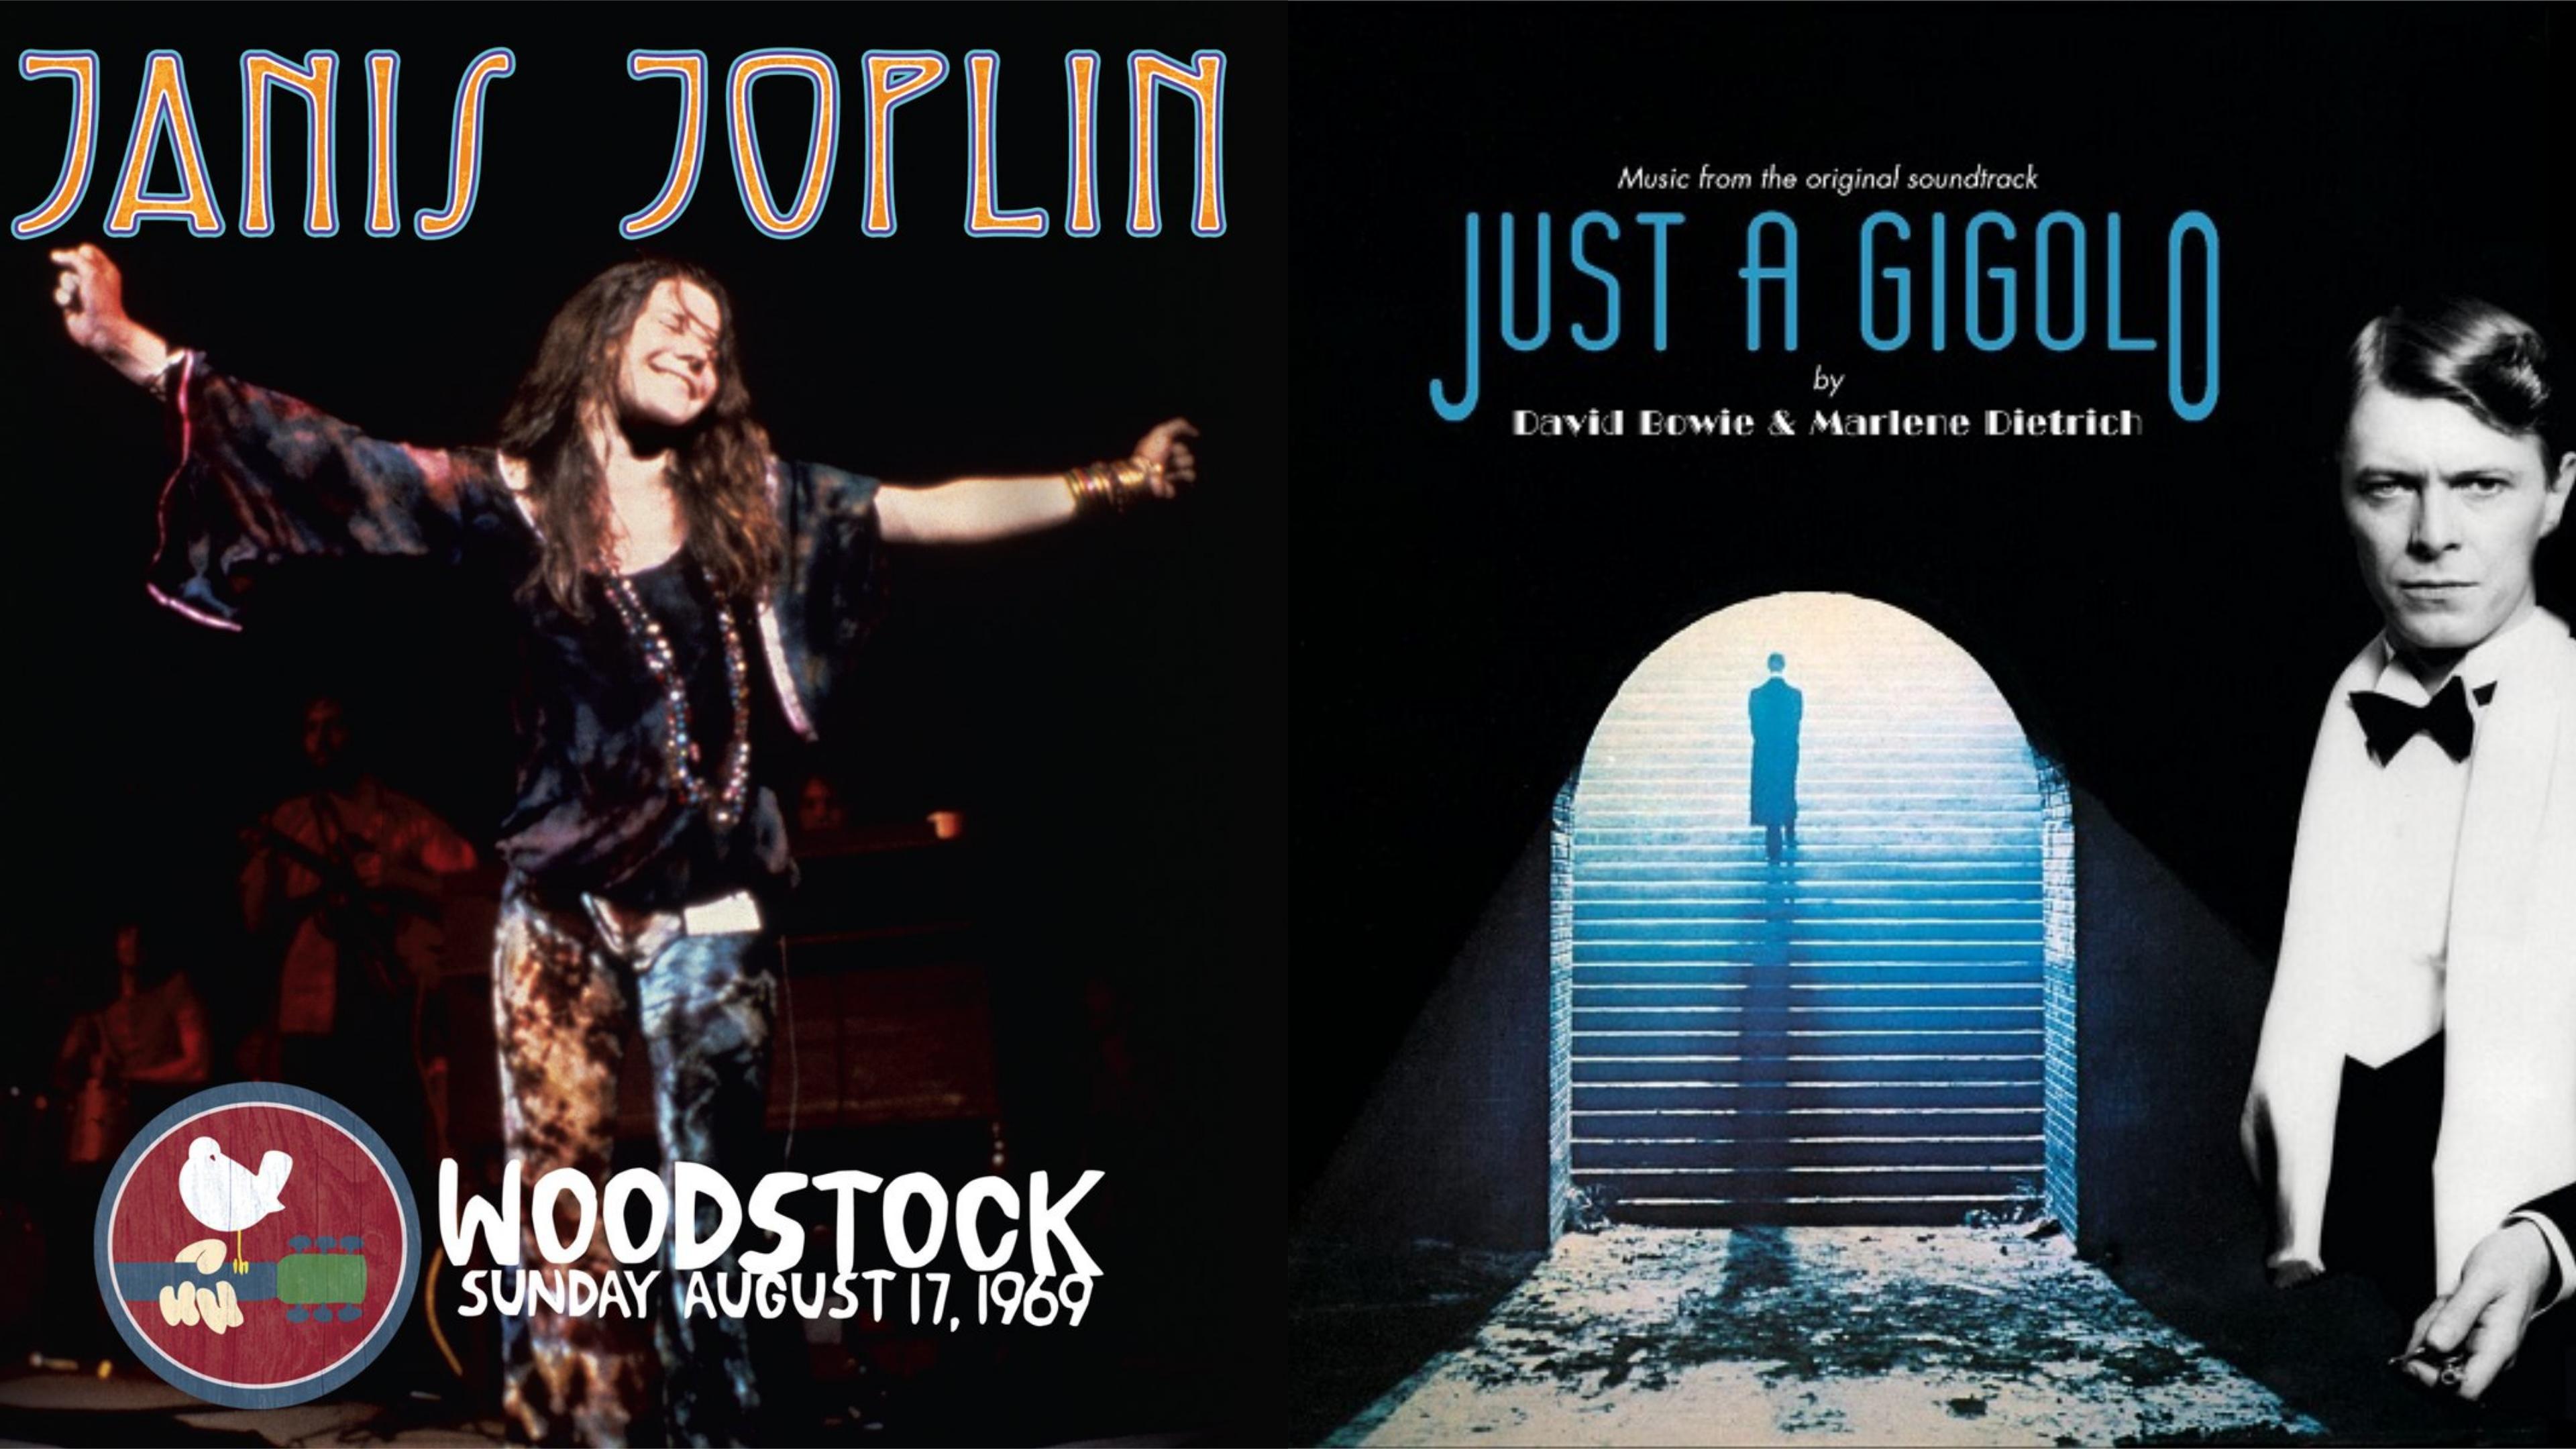 LPs von Janis Joplin und David Bowie beim Record Store Day 2019